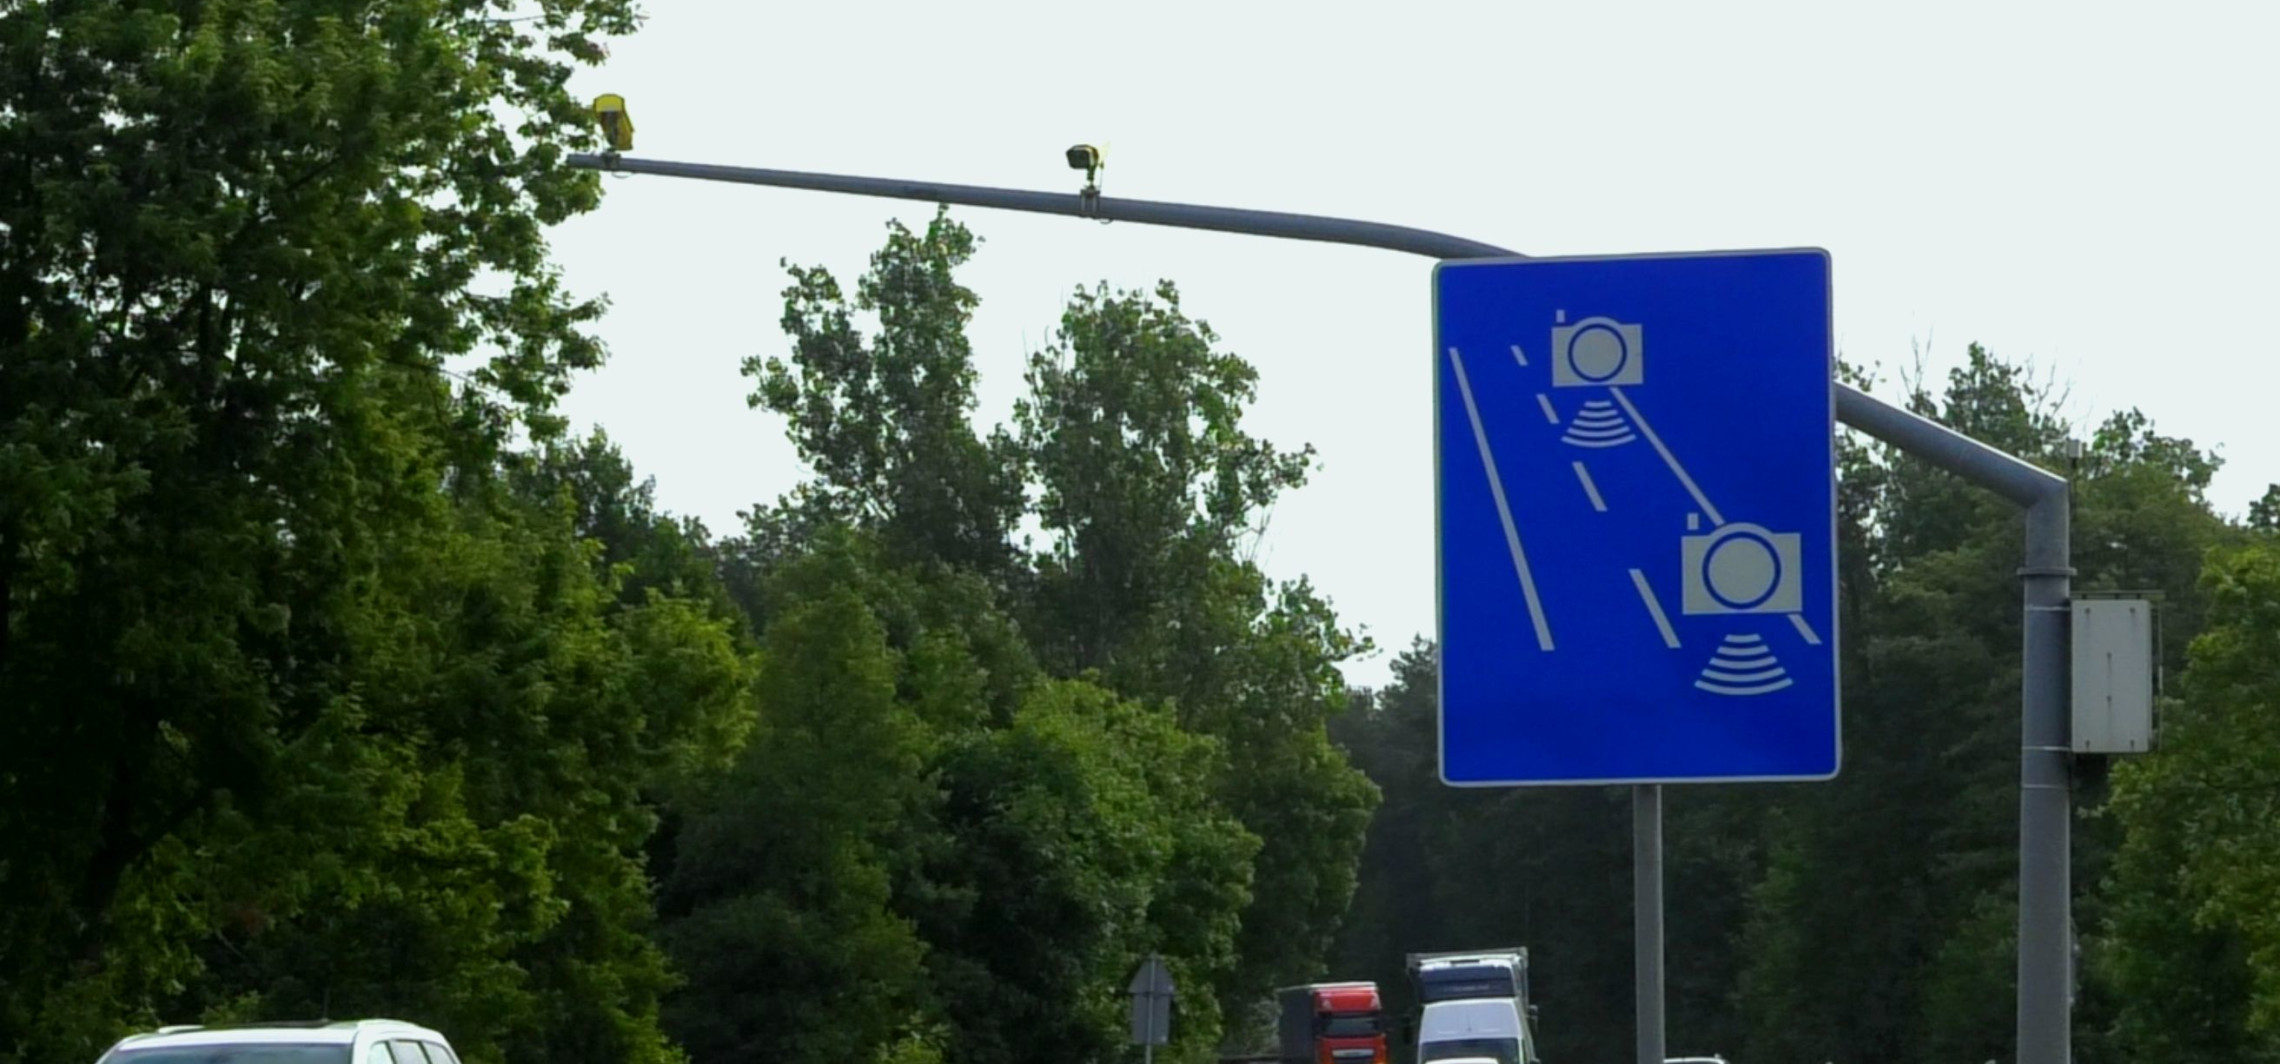 Inowrocław - Na tej drodze będzie odcinkowy pomiar prędkości